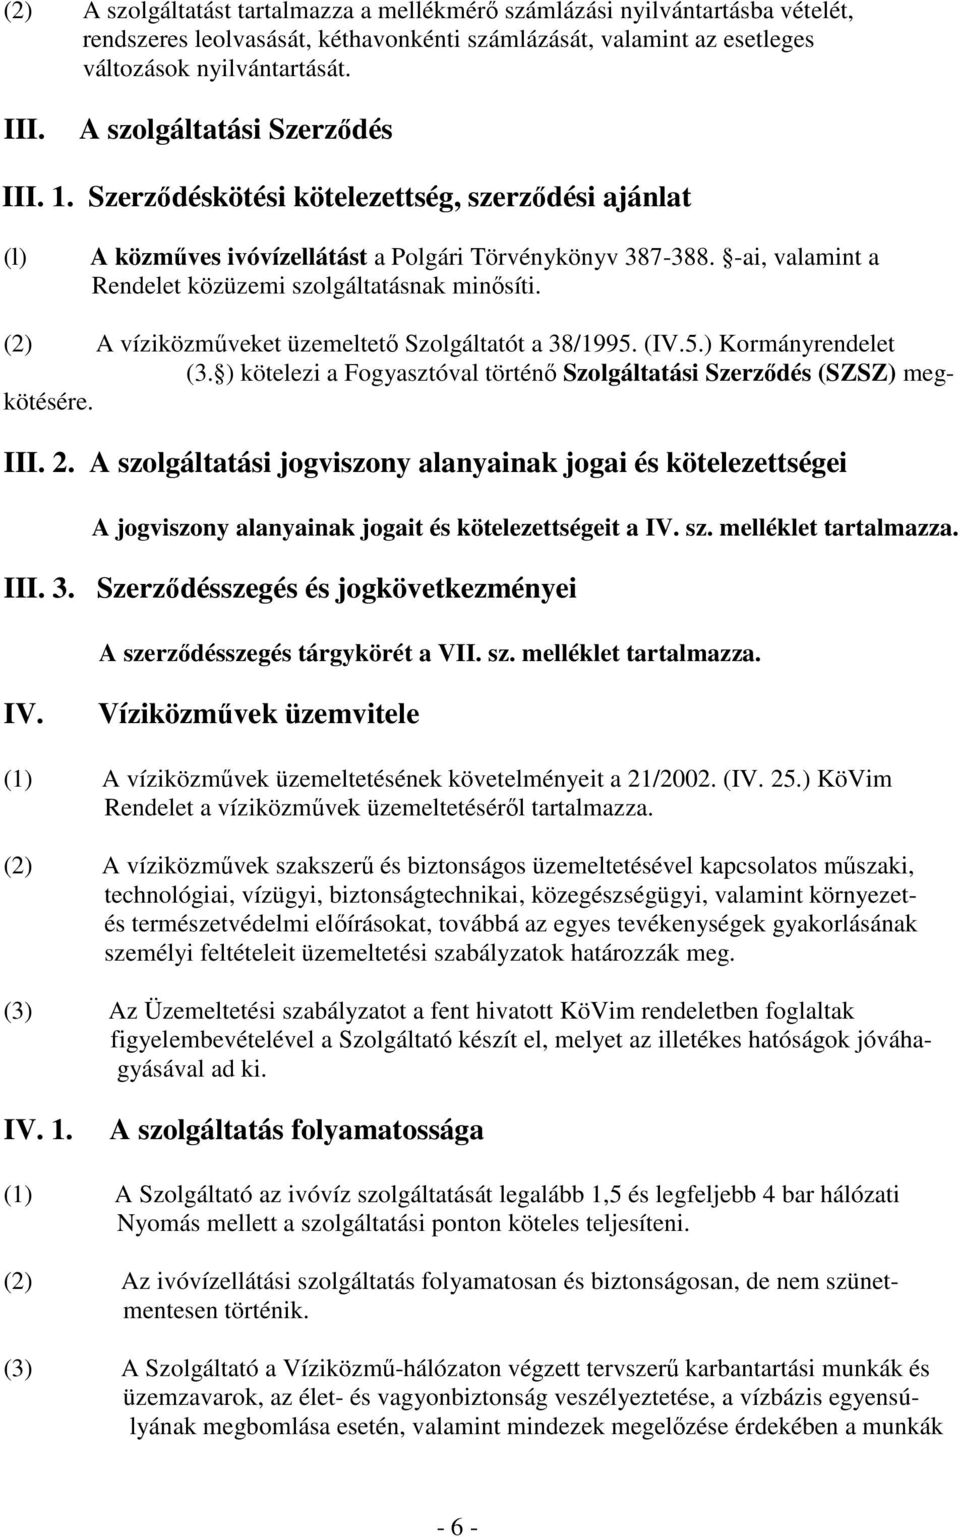 -ai, valamint a Rendelet közüzemi szolgáltatásnak minısíti. (2) A víziközmőveket üzemeltetı Szolgáltatót a 38/1995. (IV.5.) Kormányrendelet (3.